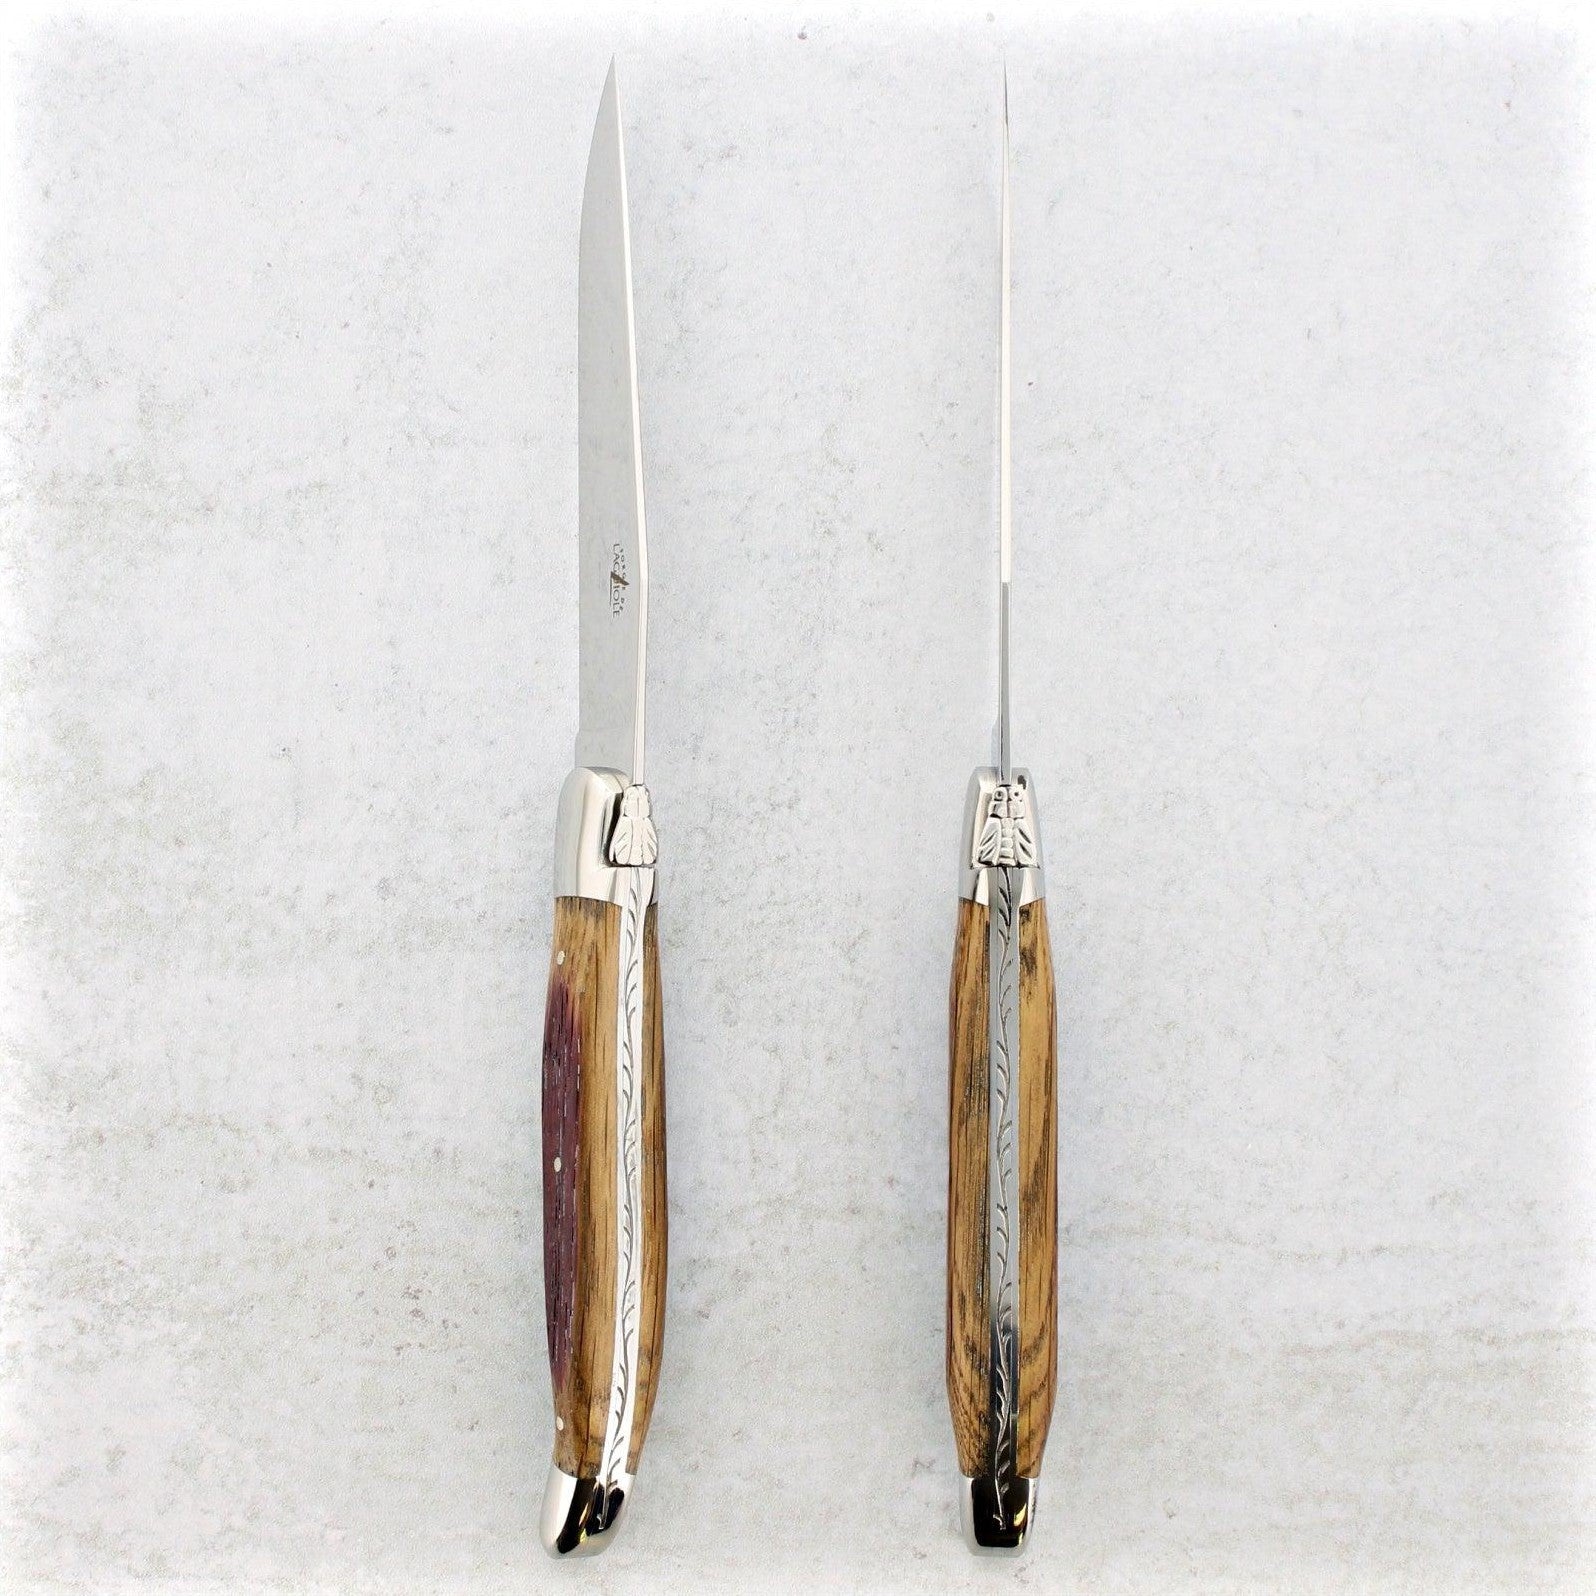 https://www.laguiole-imports.com/cdn/shop/products/Forge-de-Laguiole-Oak-Barrel-Wood-Steak-Knives-Shiny-Forge-de-Laguiole-2.jpg?v=1674998881